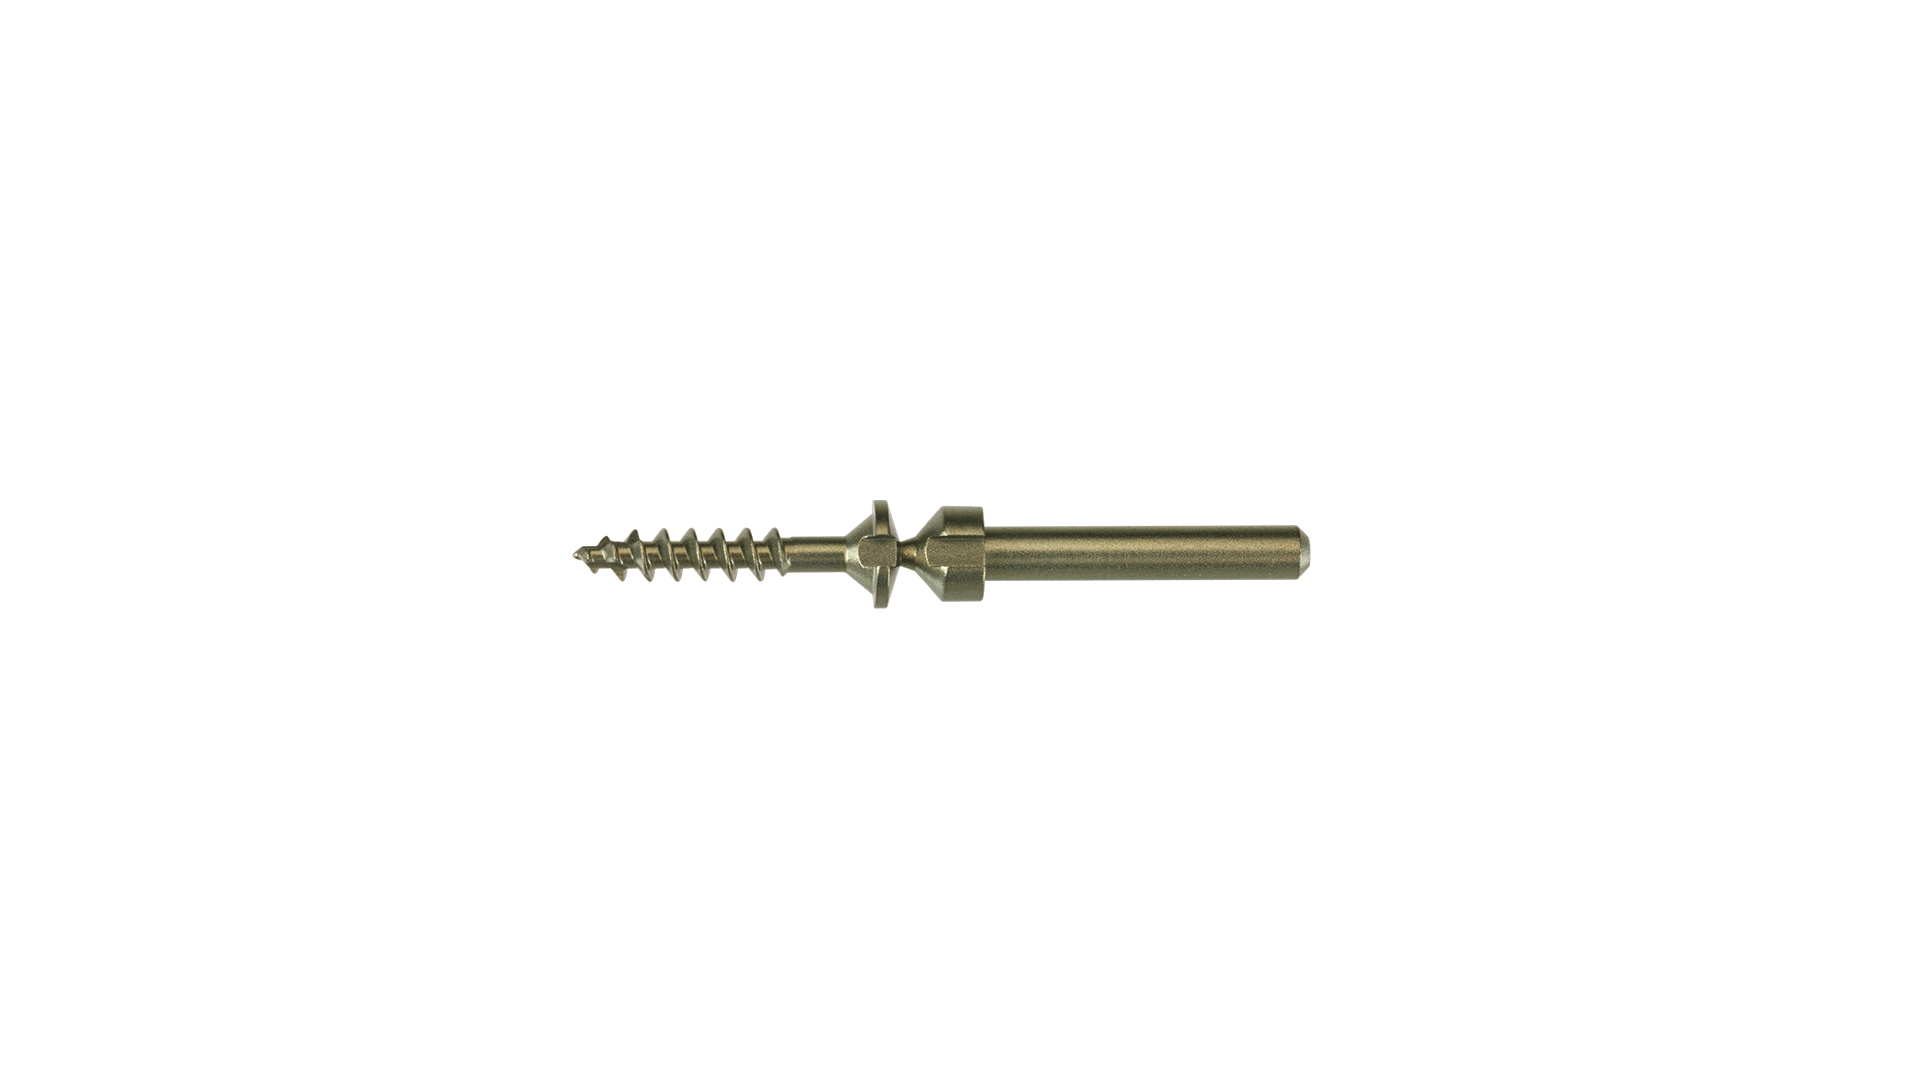 Drill fix screw